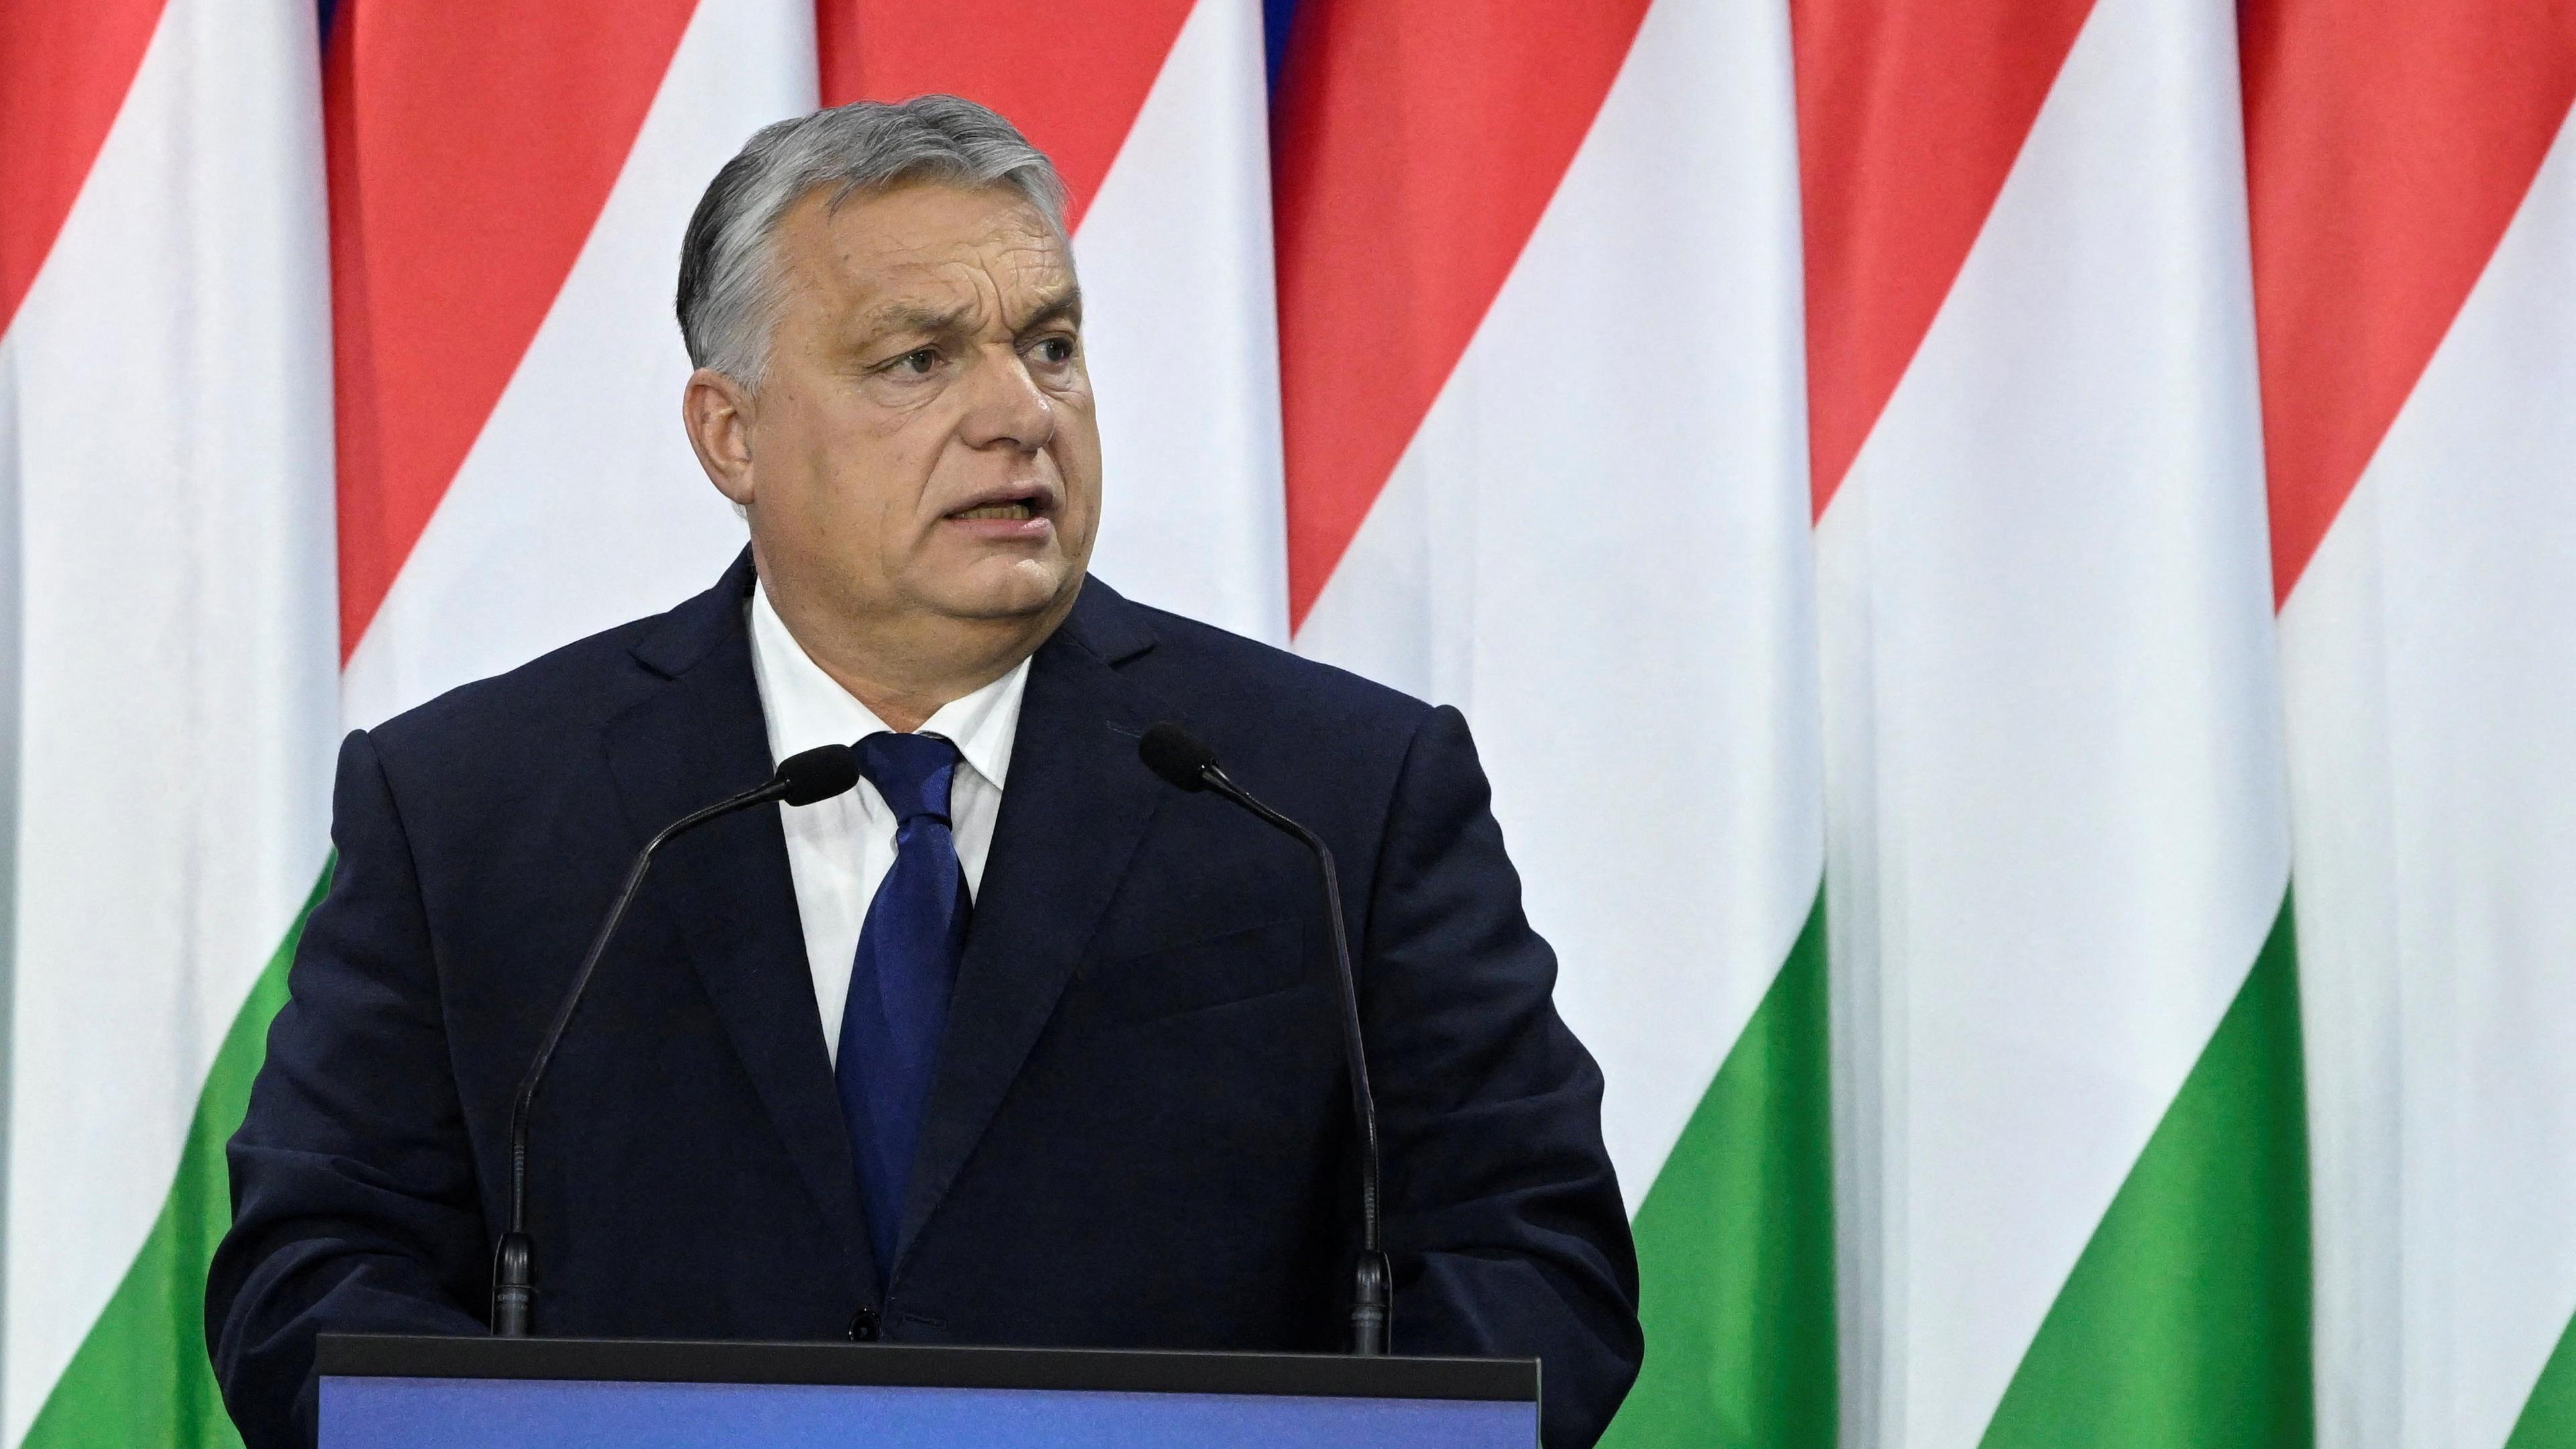 Der ungarische Premierminister Orban hält seine jährliche Rede zur Lage der Nation in Budapest.